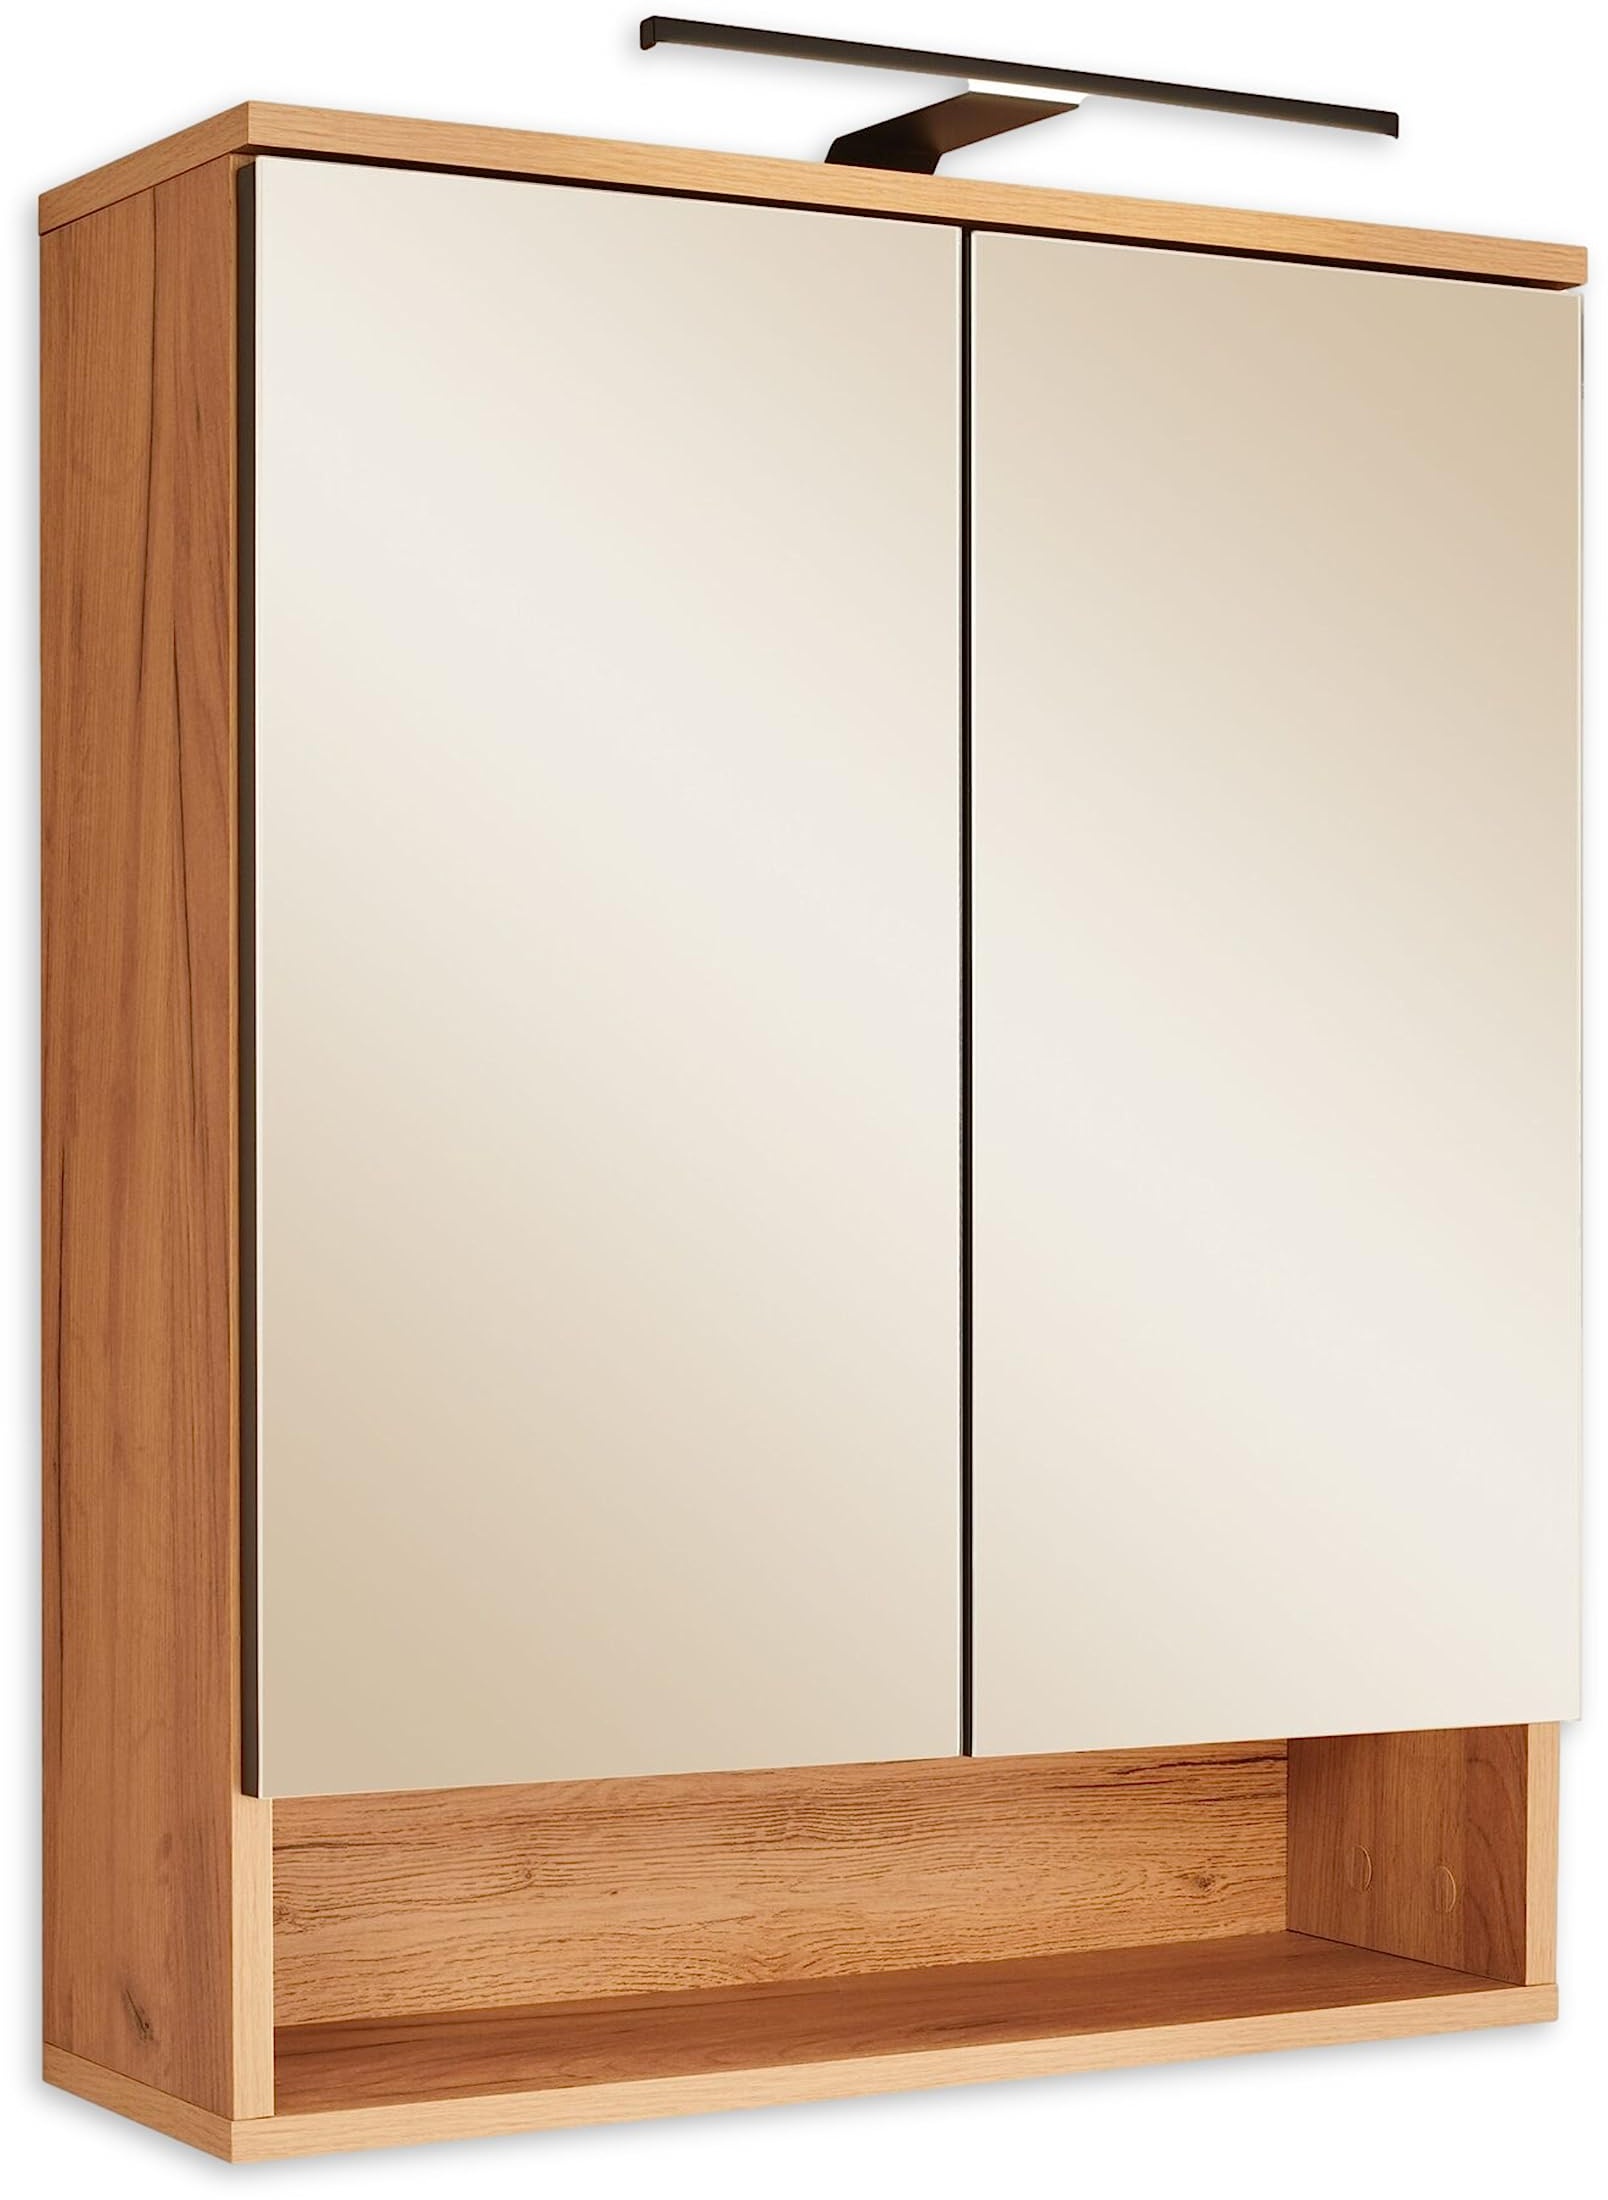 RIOM Spiegelschrank Bad mit LED-Beleuchtung in Artisan Eiche Optik - Badezimmerspiegel Schrank mit viel Stauraum - 60 x 75 x 22 cm (B/H/T)